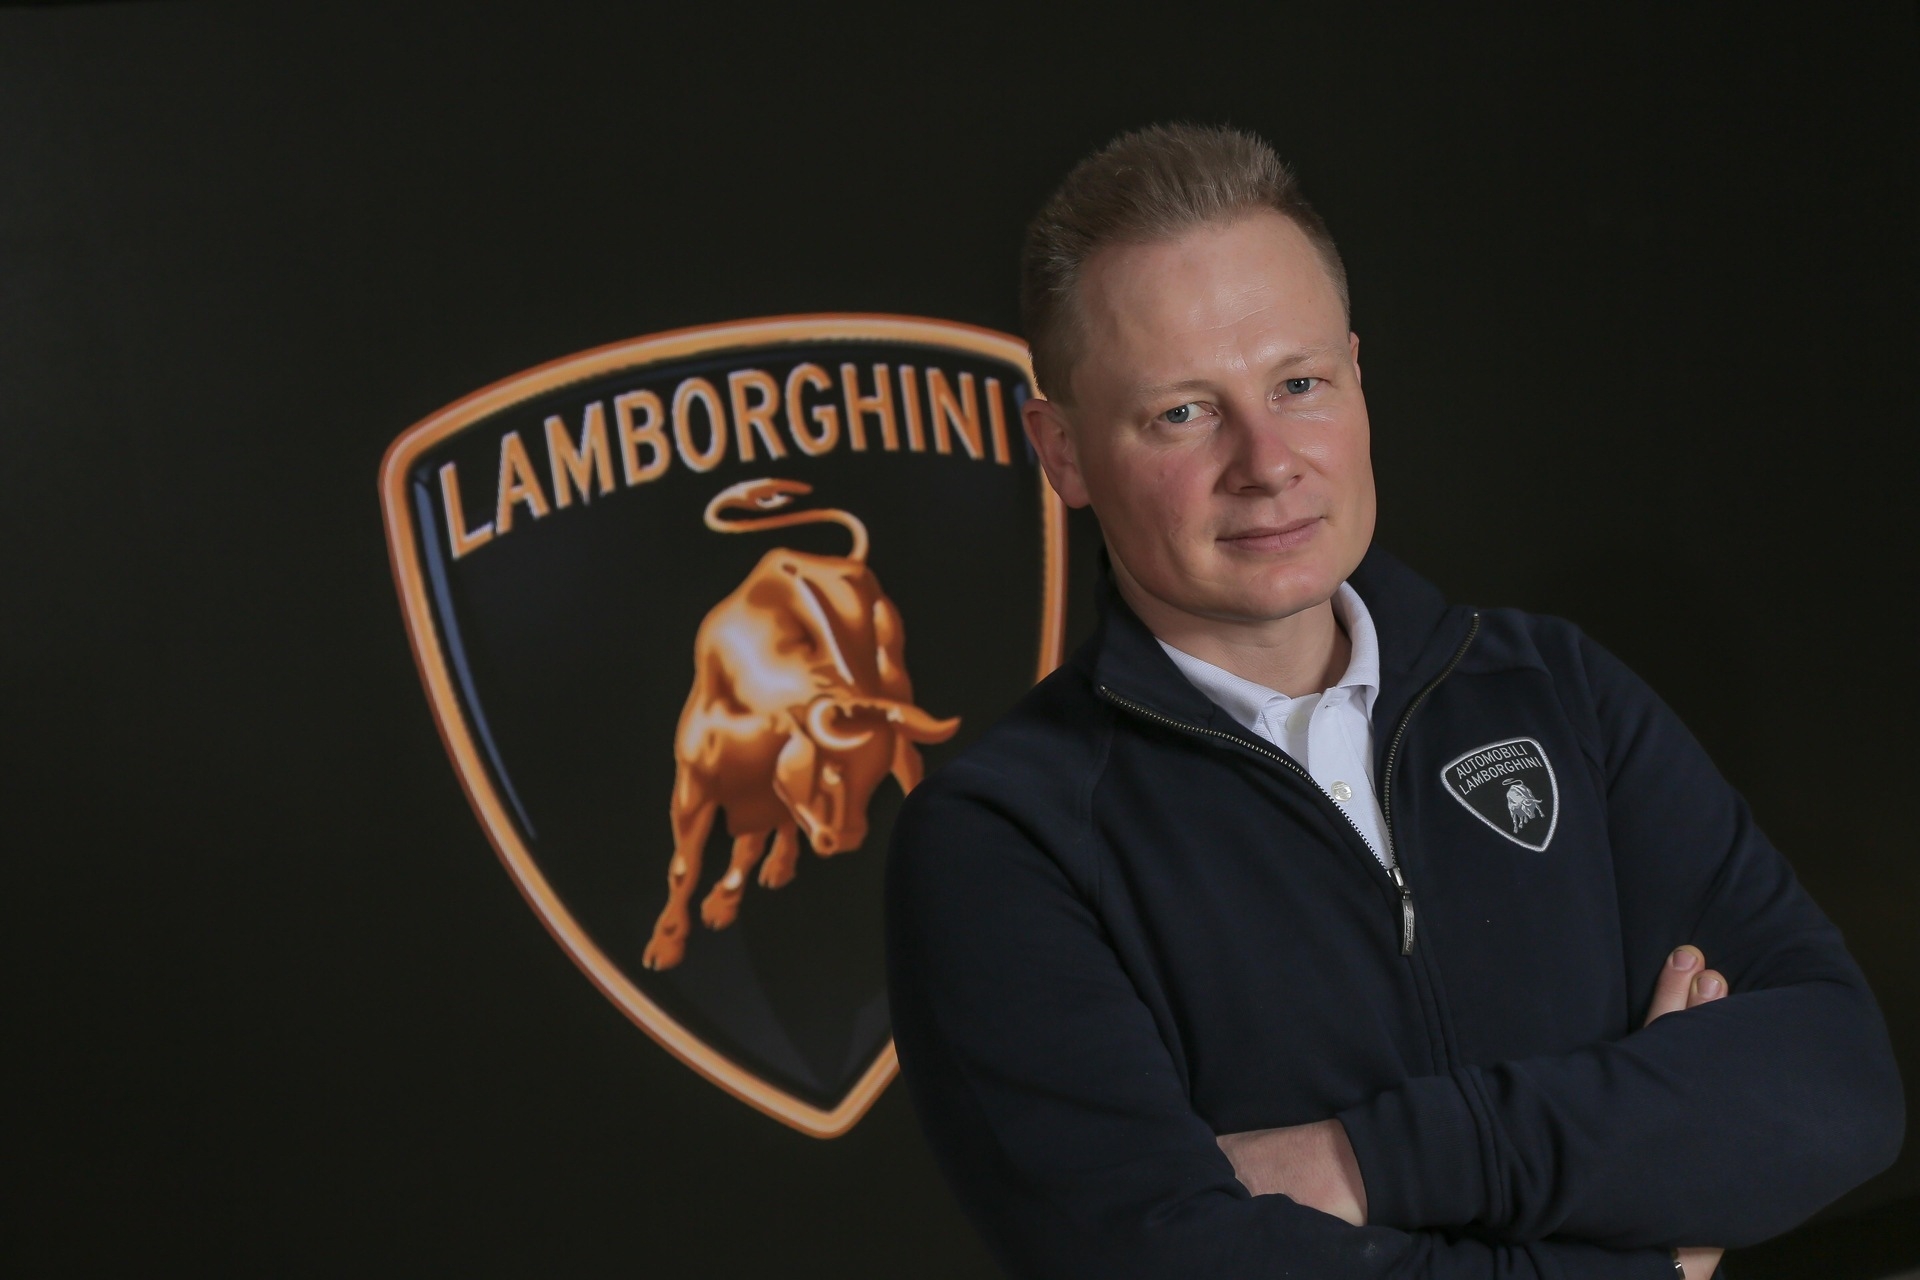 Lanzador: Ο Mitja Borkert είναι Διευθυντής Σχεδιασμού της Automobili Lamborghini